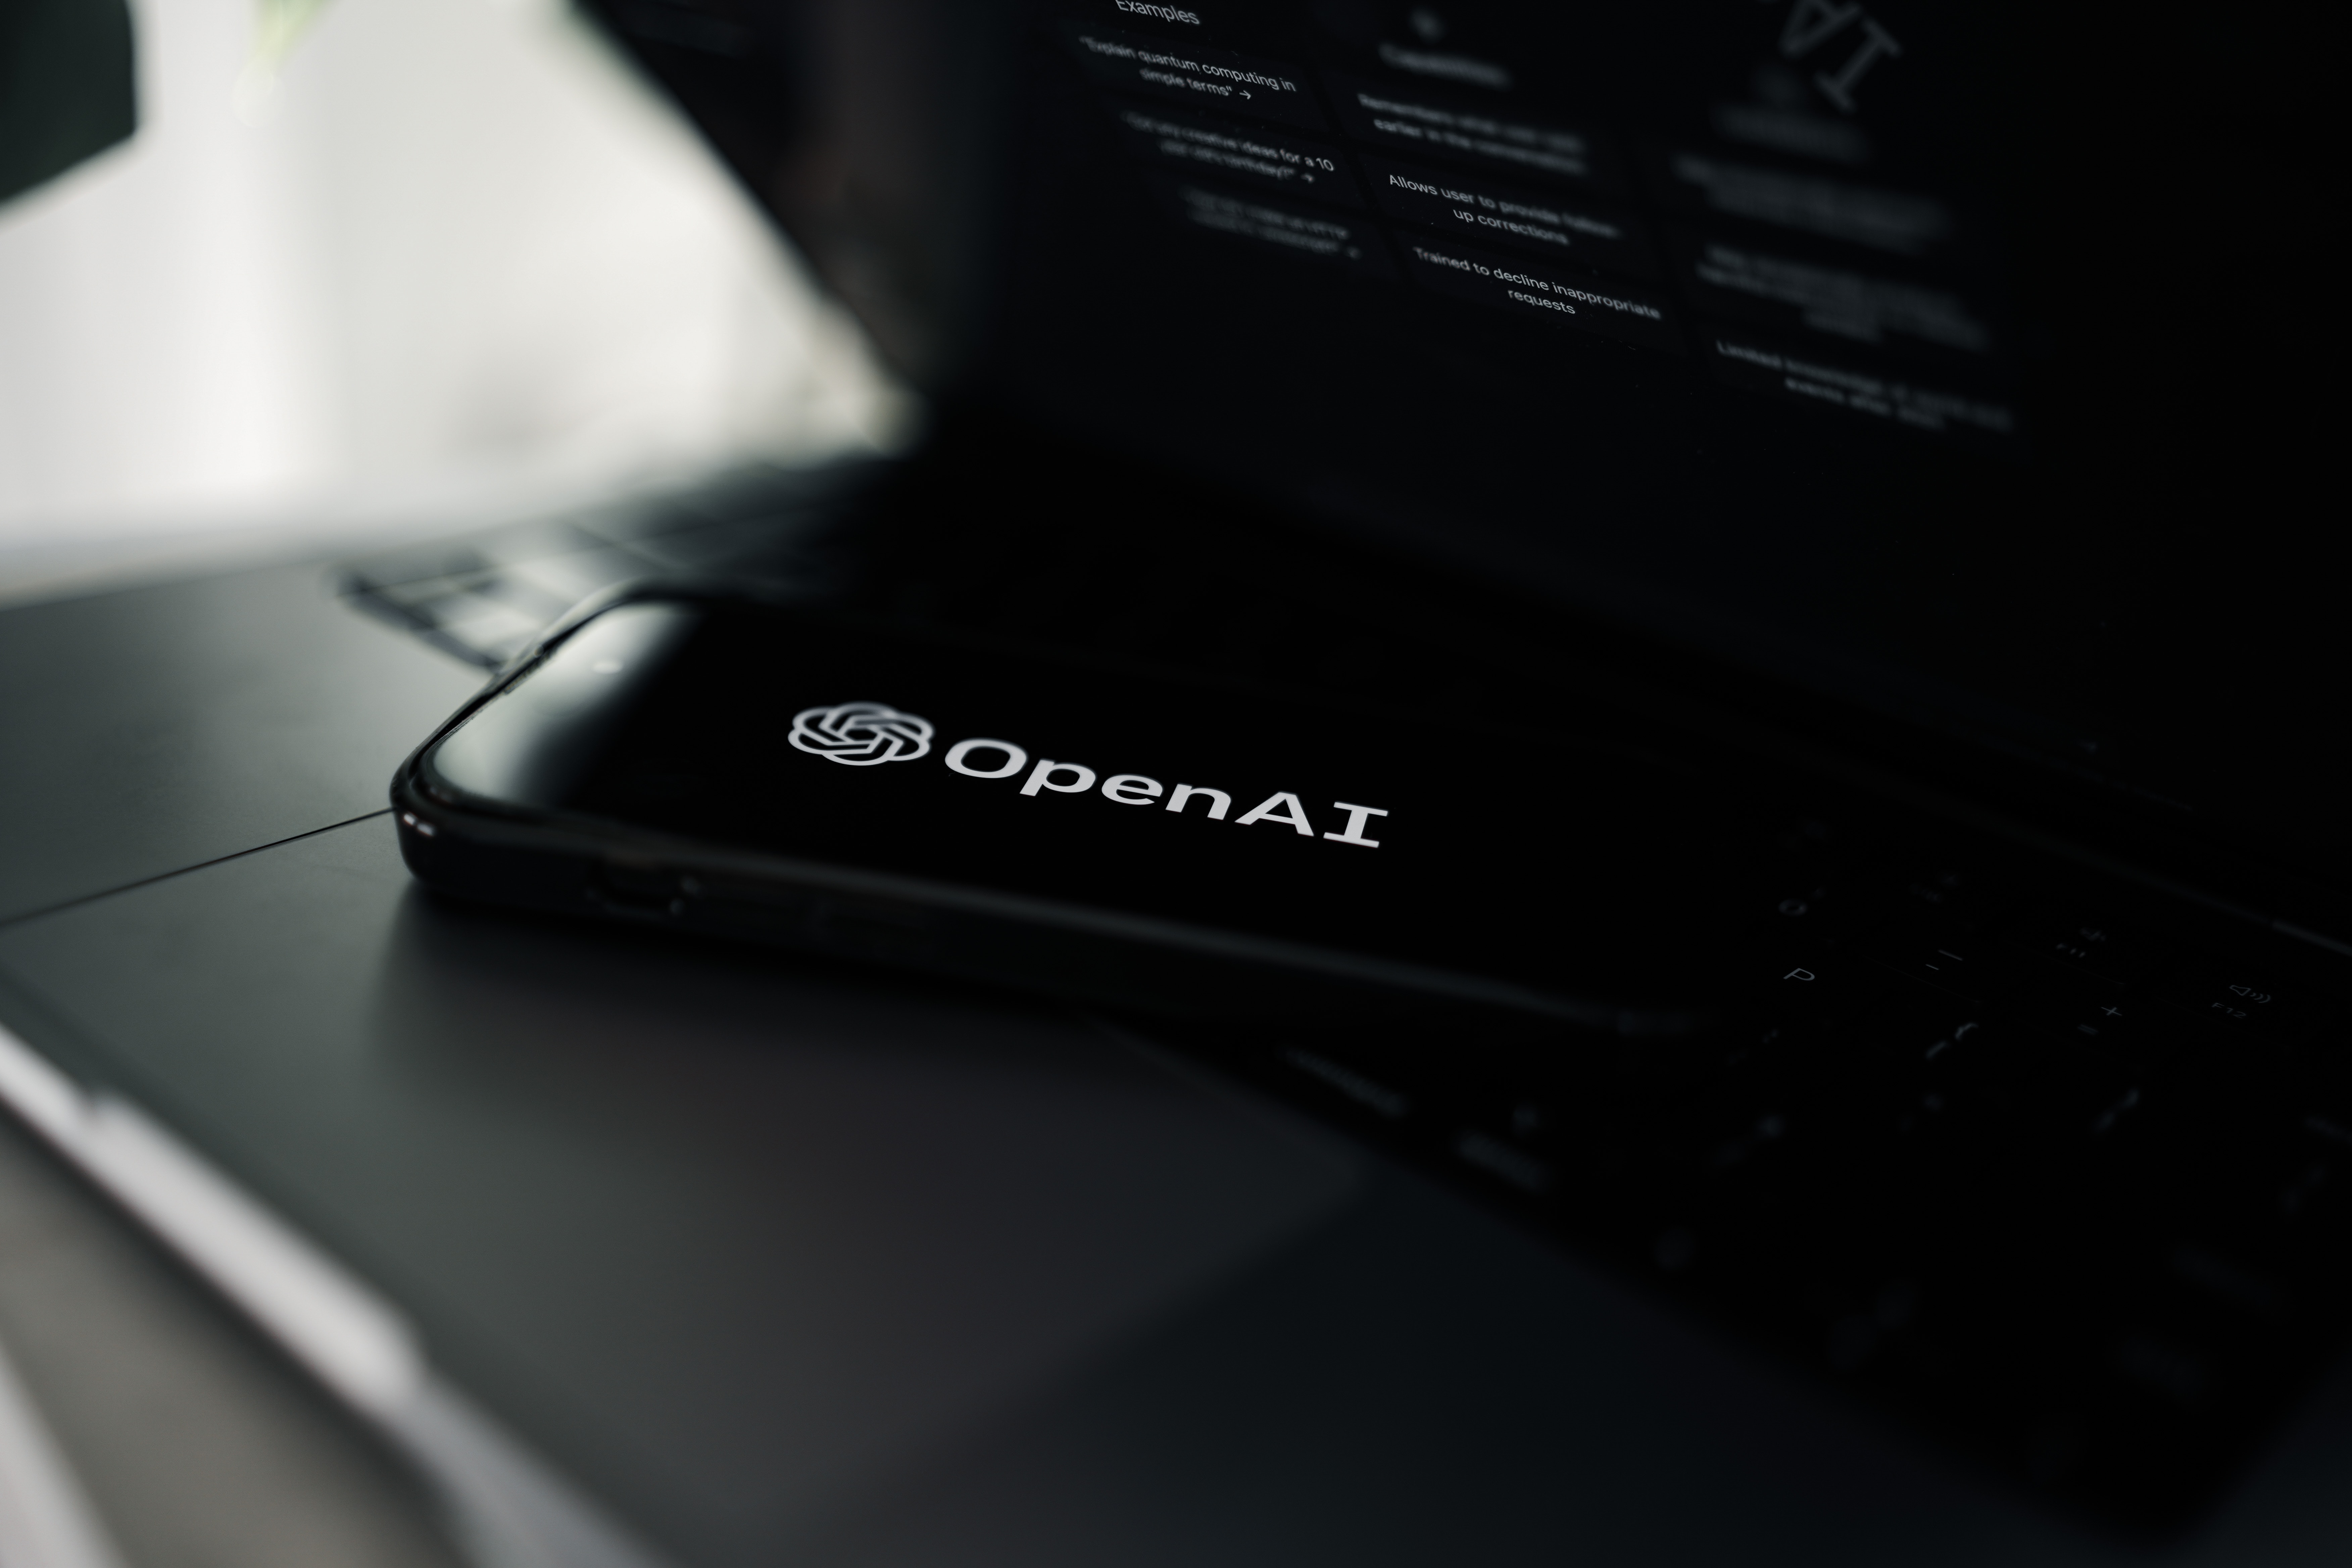 OpenAI obwinił atak DDoS za awarię ChatGPT. Odpowiedzialność za atak wzięli na siebie prorosyjscy hakerzy z Anonymous Sudan